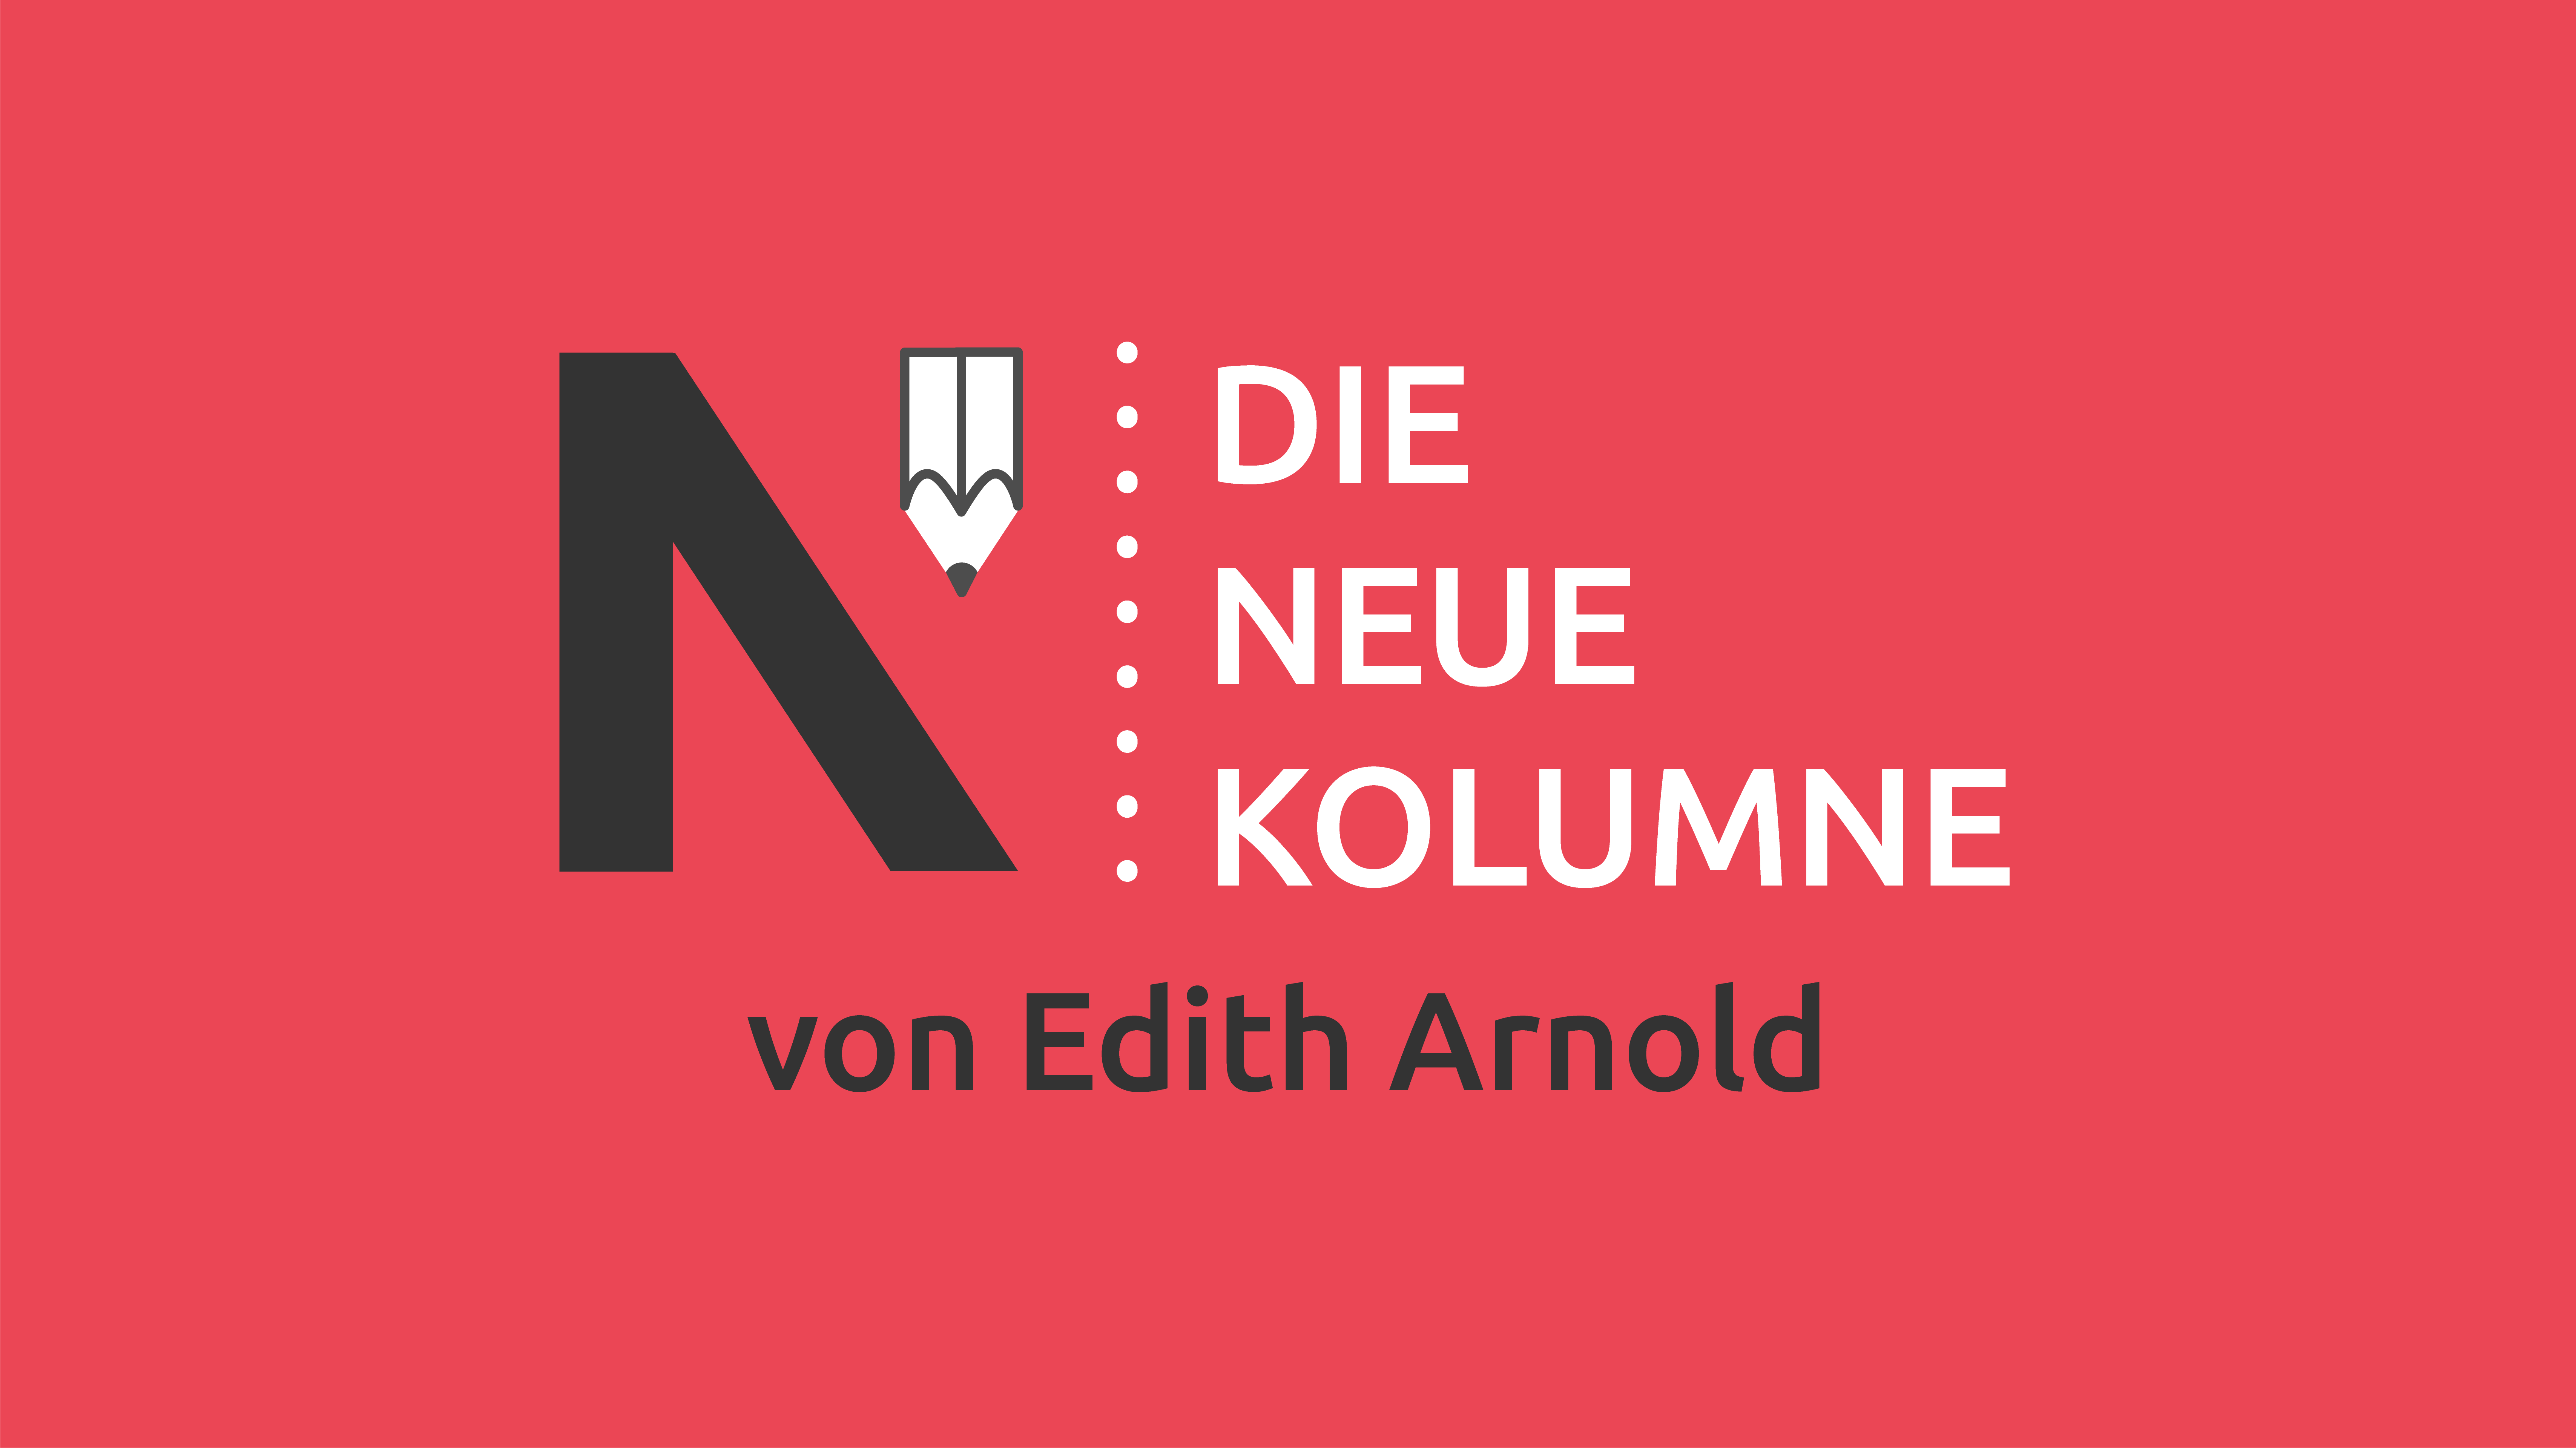 Das Logo von Die Neue Norm auf rotem Grund. Rechts davon steht: die Neue Kolumne. Unten steht: von Edith Arnold.